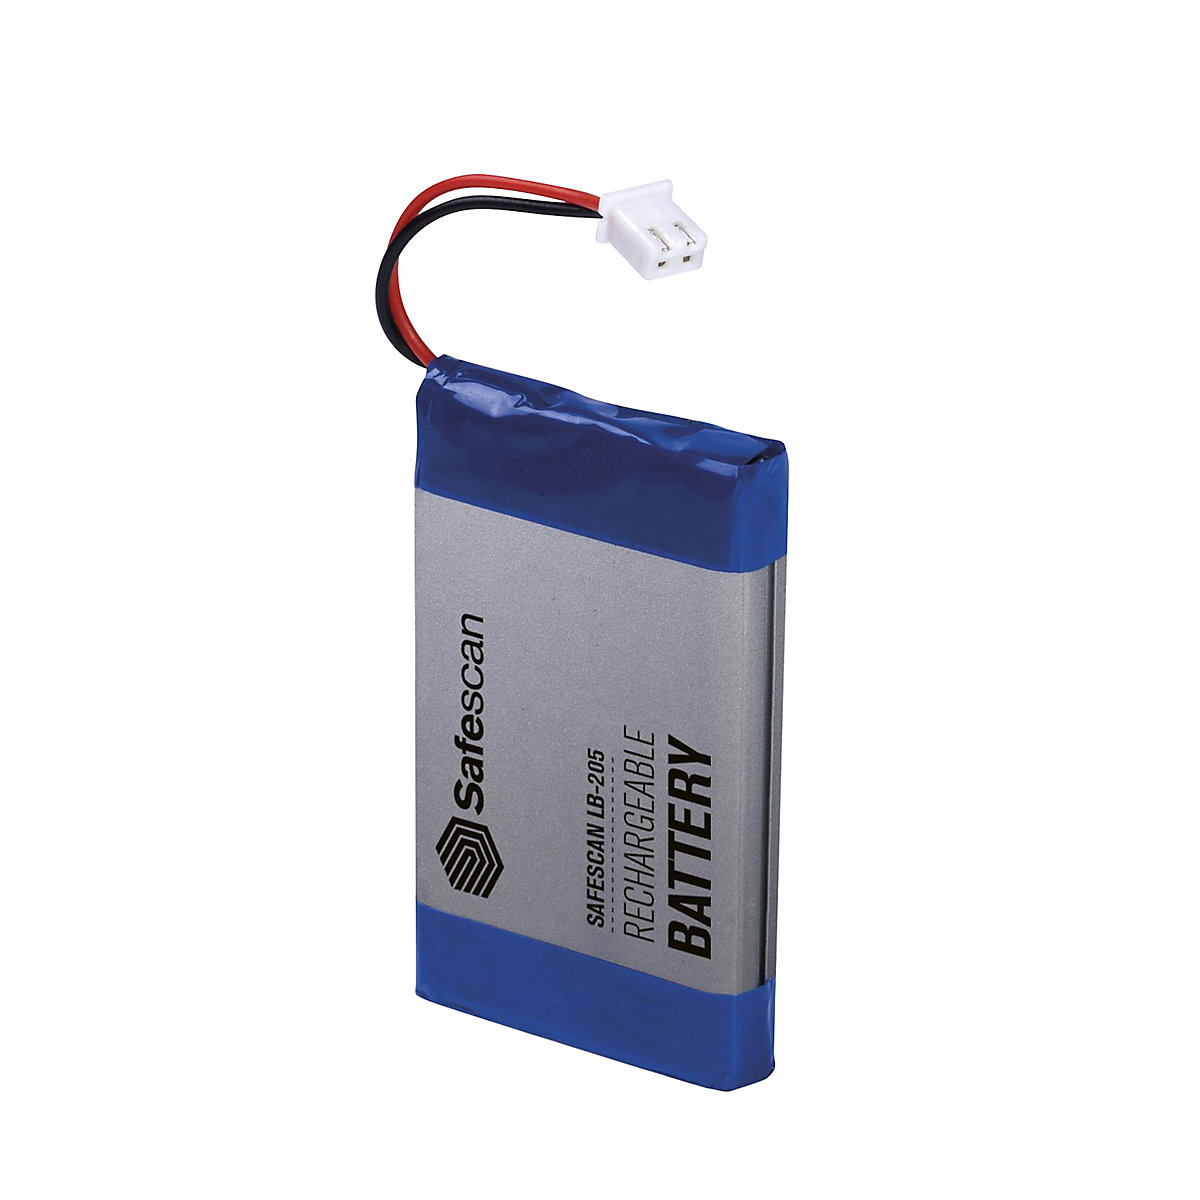 Aufladbare Batterie Safescan, für Geldwaagen 6165 und 6185, LB-205